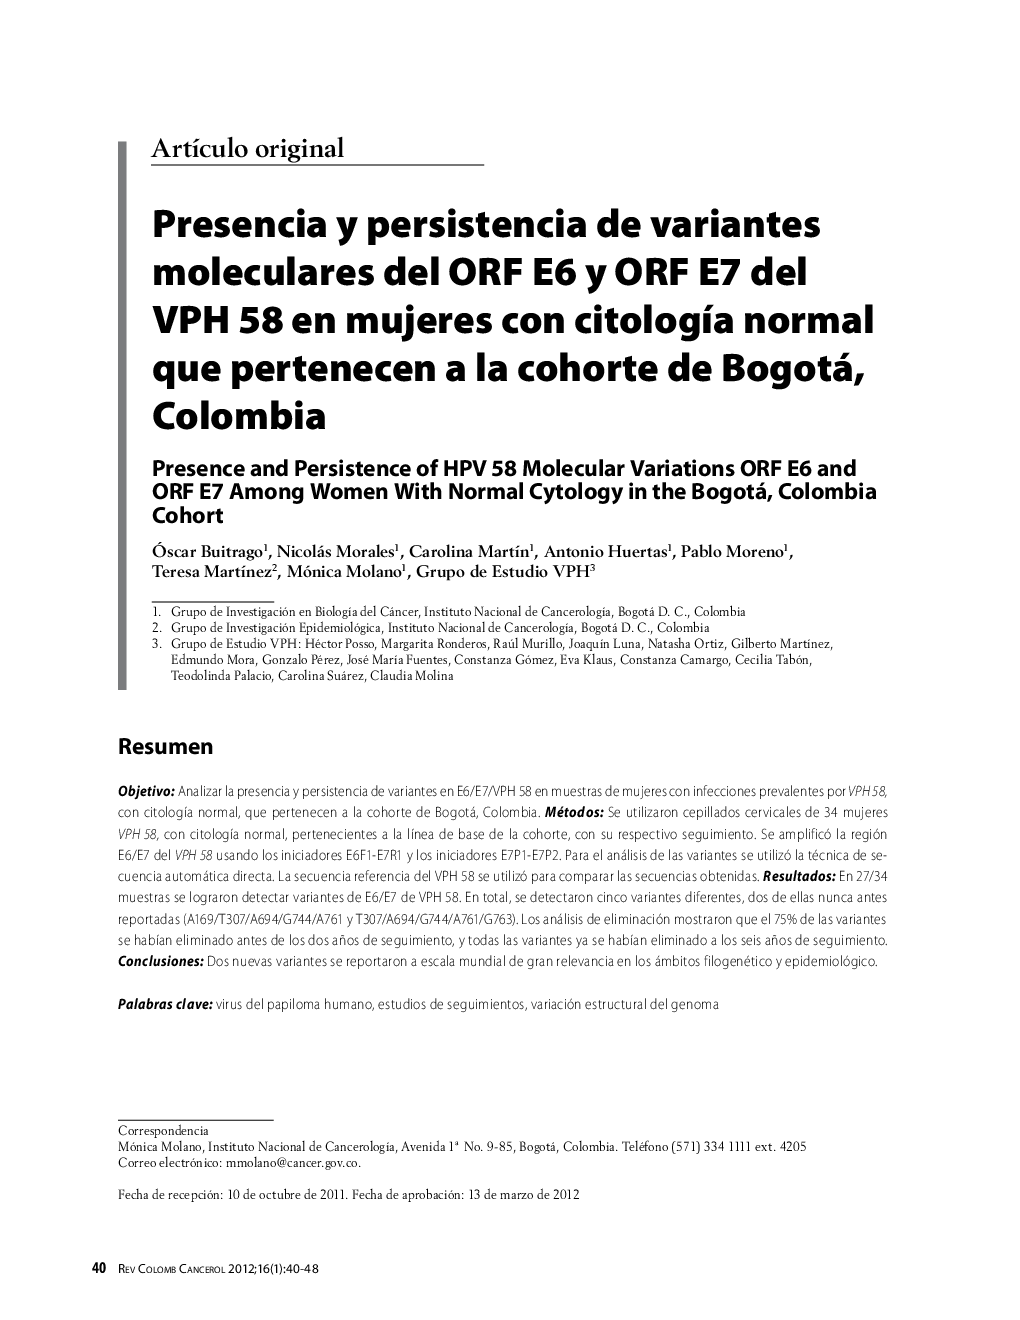 Presencia y persistencia de variantes moleculares del ORF E6 y ORF E7 del VPH 58 en mujeres con citologÃ­a normal que pertenecen a la cohorte de Bogotá, ColombiaPresence and Persistence of HPV 58 Molecular Variations ORF E6 and ORF E7 Among Women With No